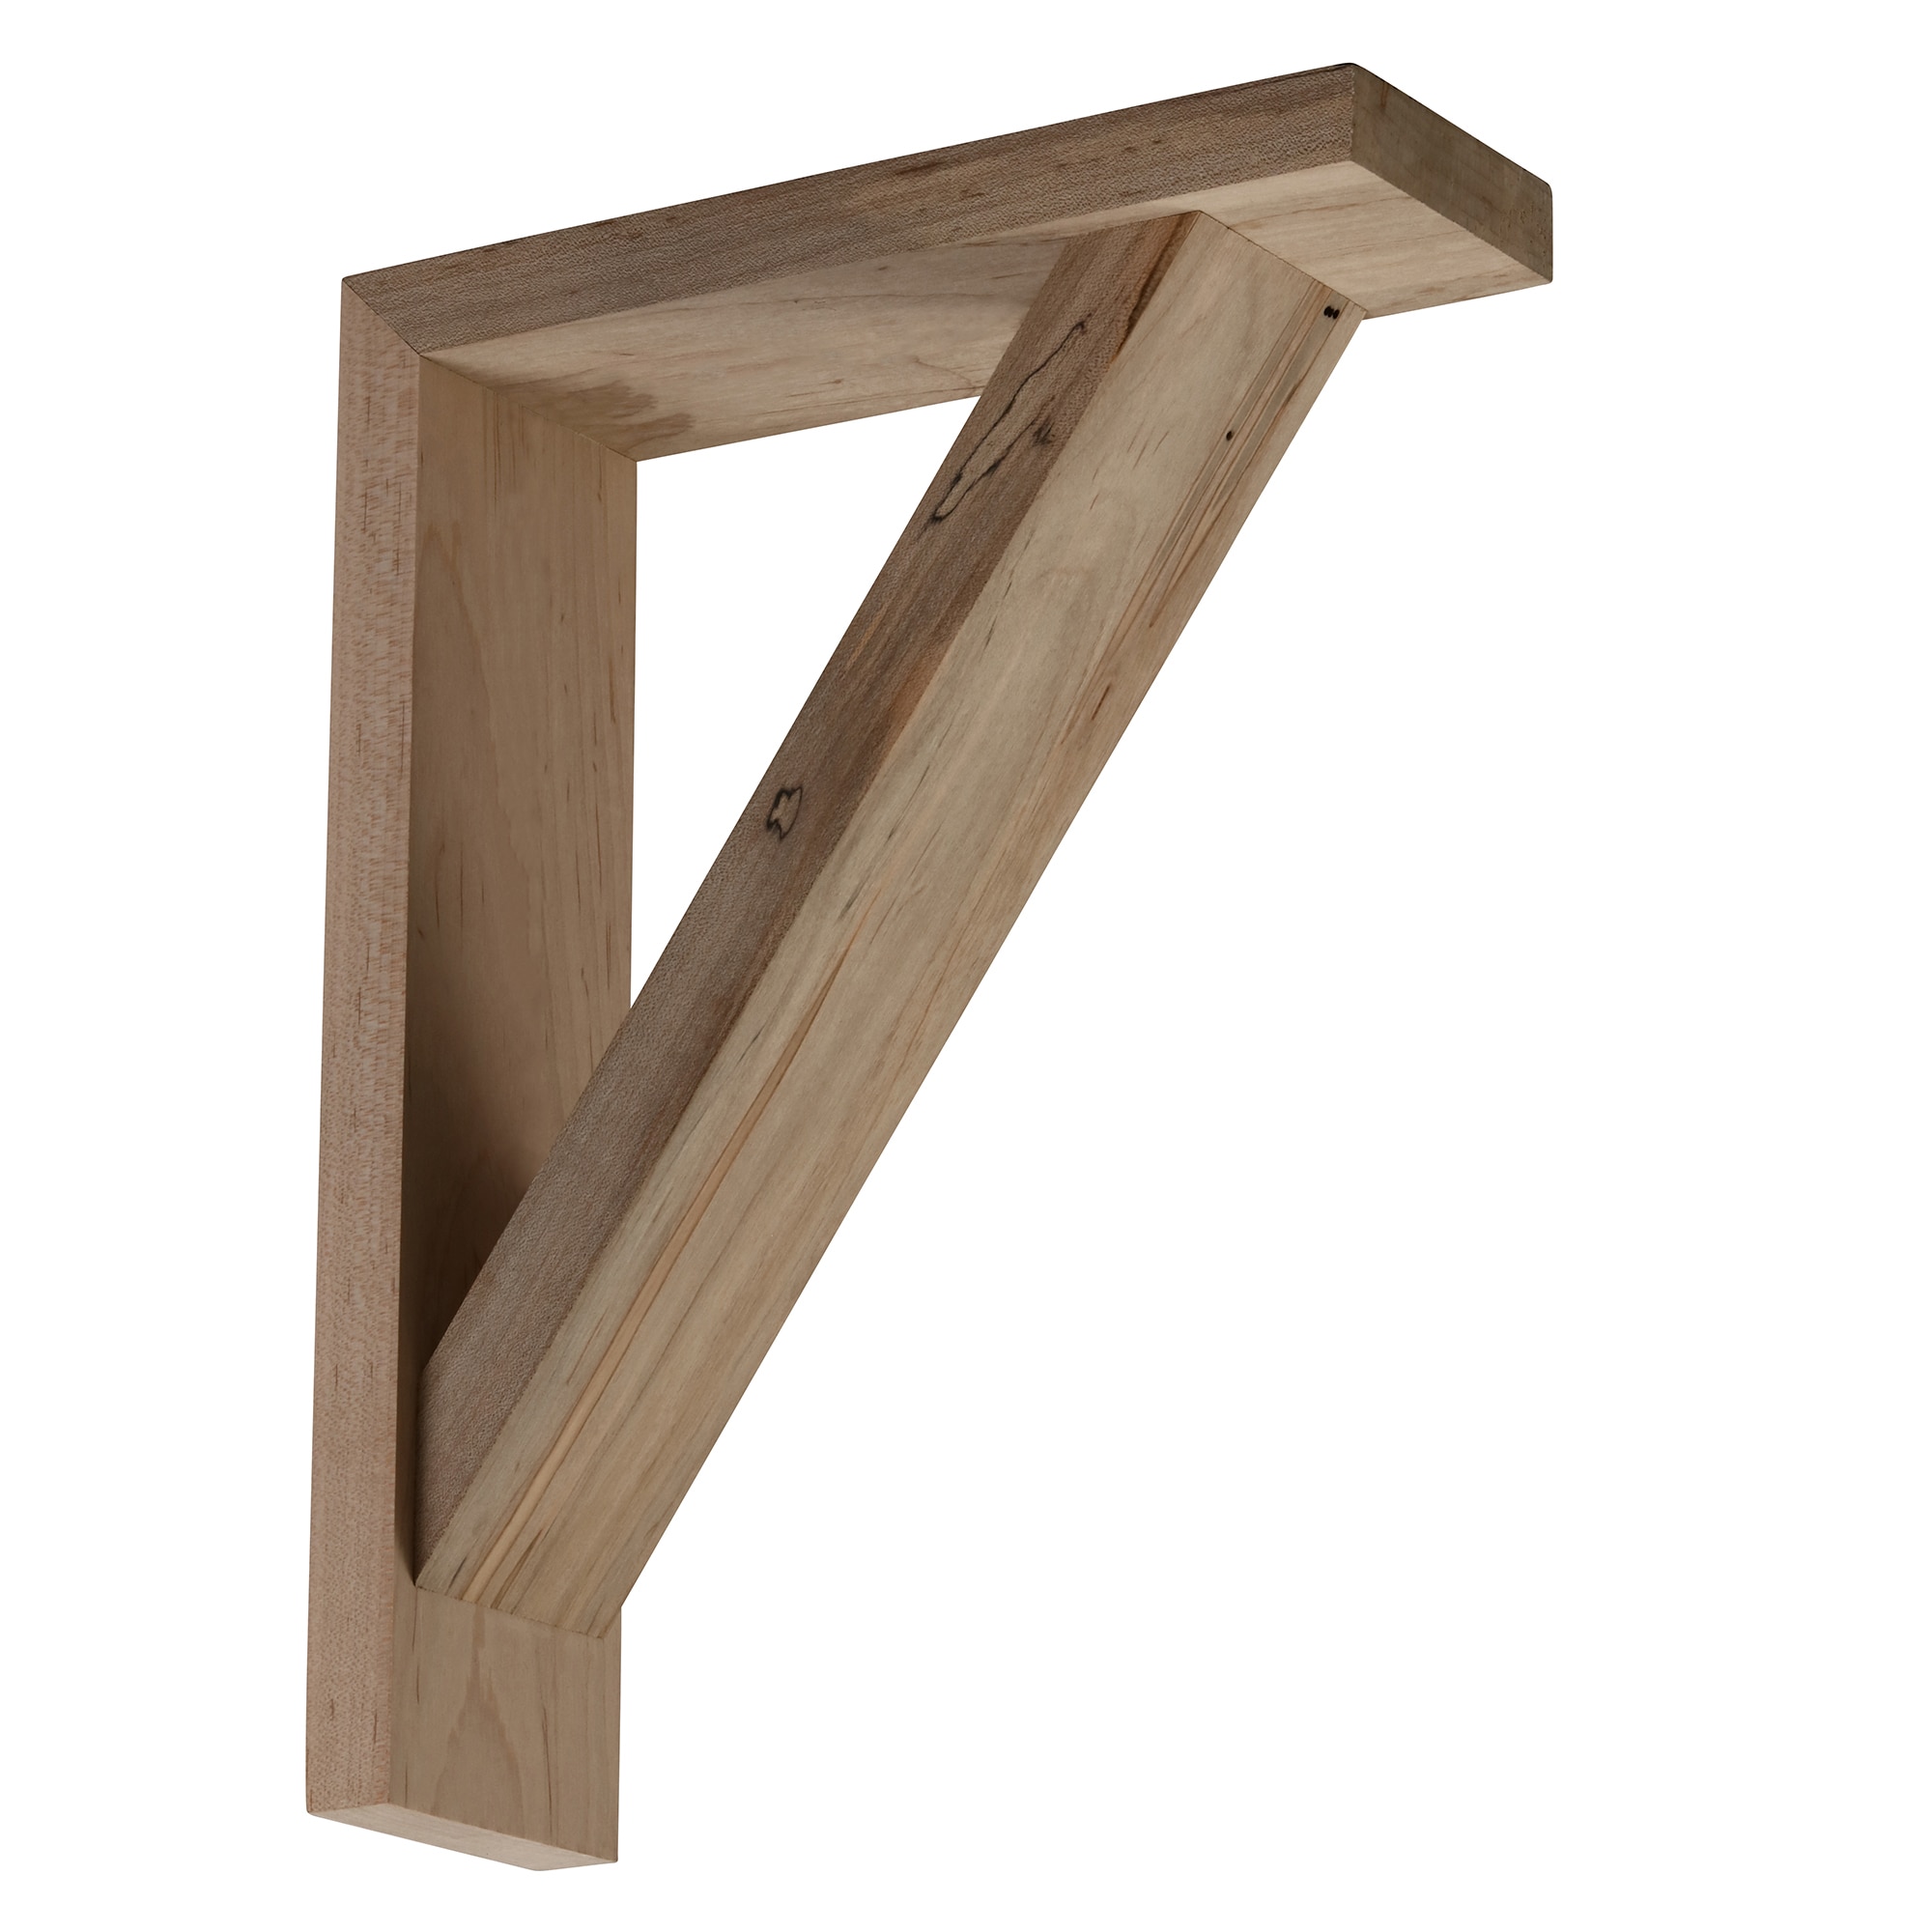 Ideal for 10" - 11.5" Shelves Wooden Shelf Brackets x 4 